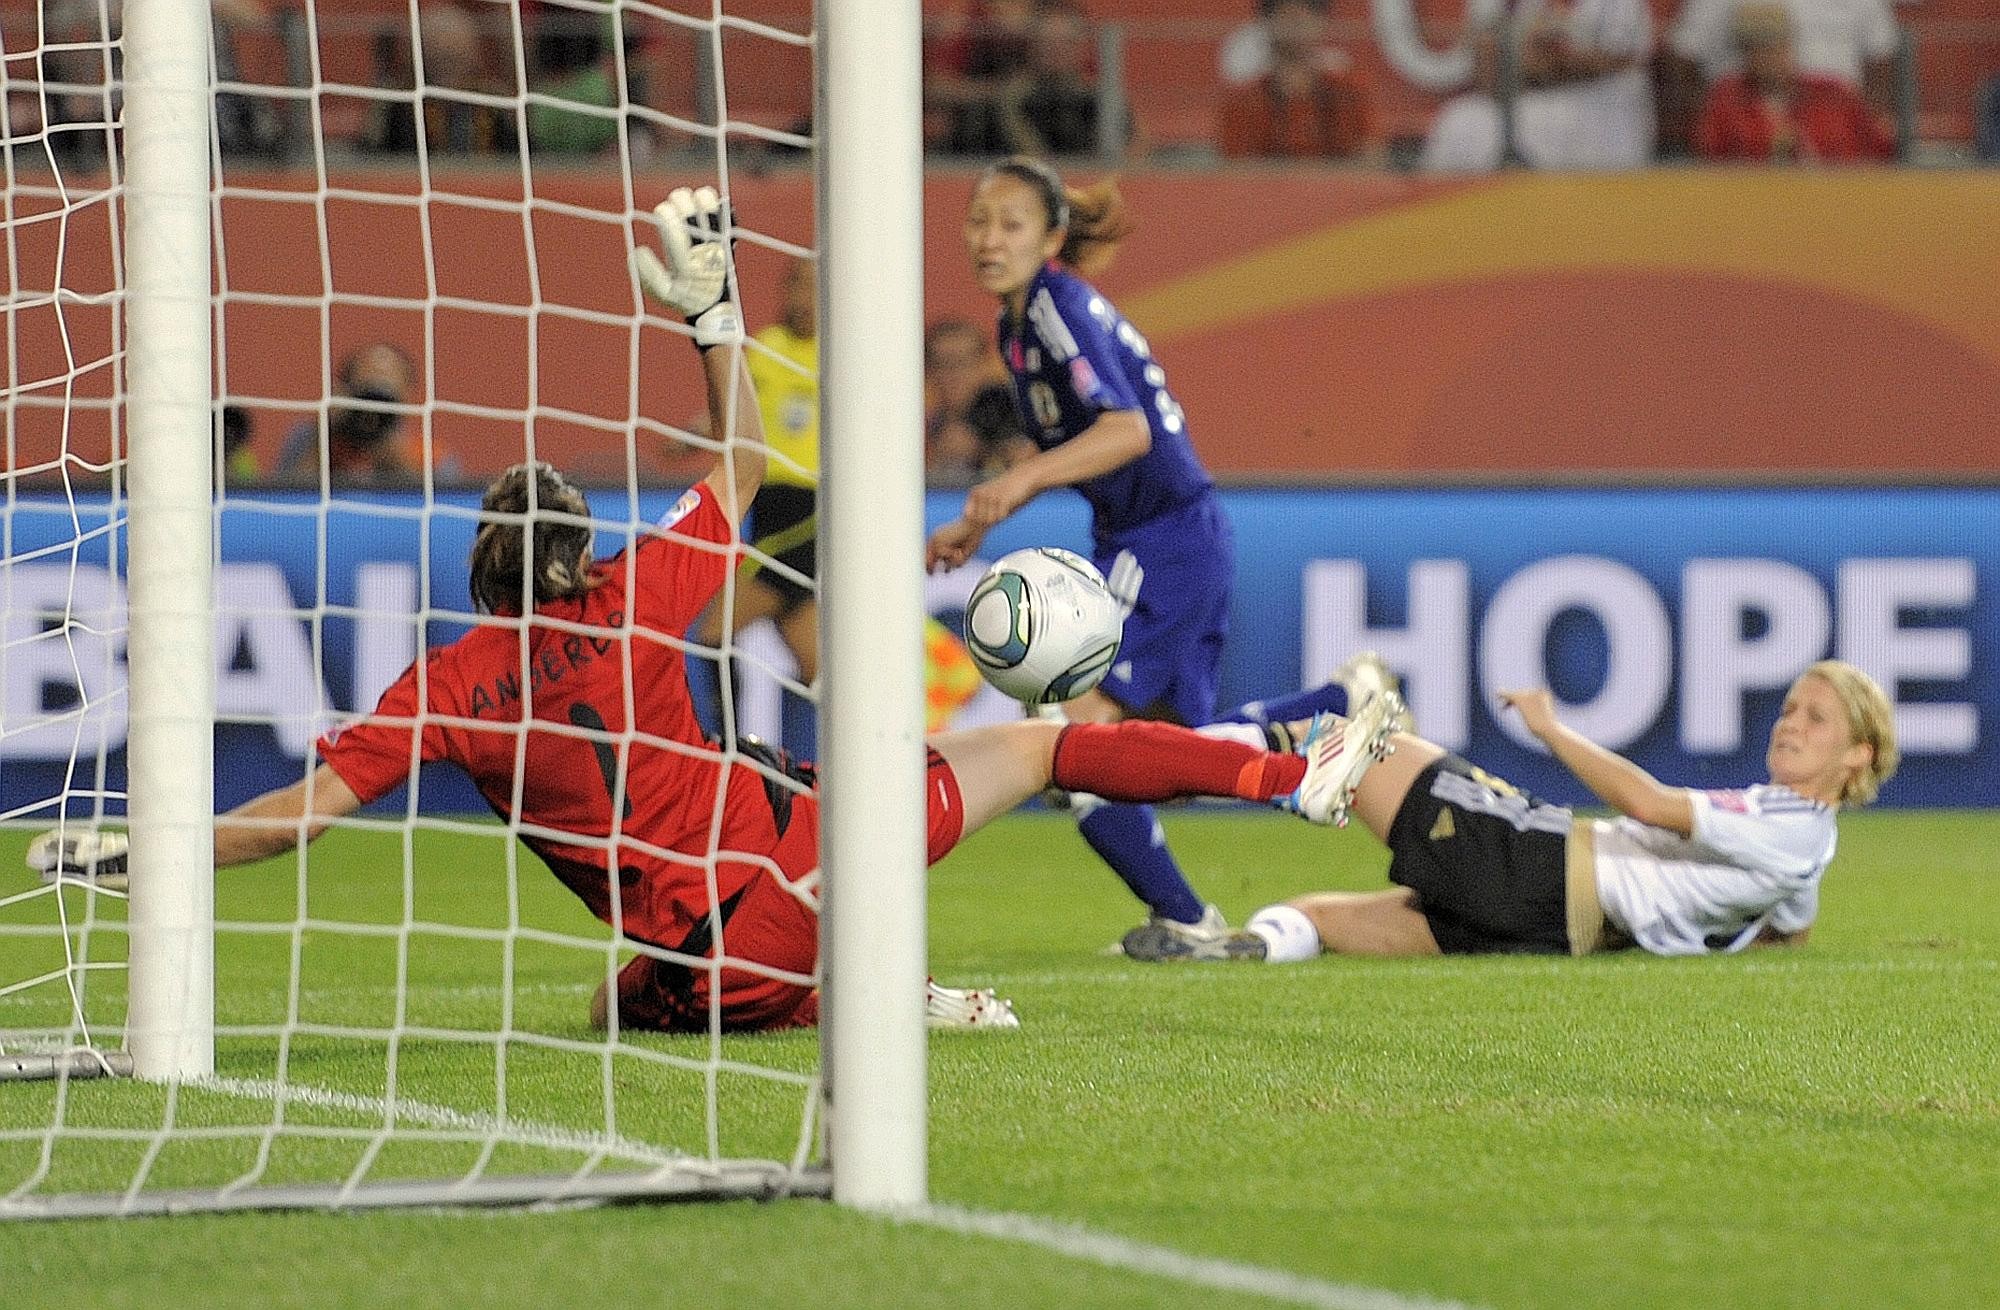 WM-Viertelfinale Deutschland gegen Japan, Endstand 0.1 nach Verlängerung.